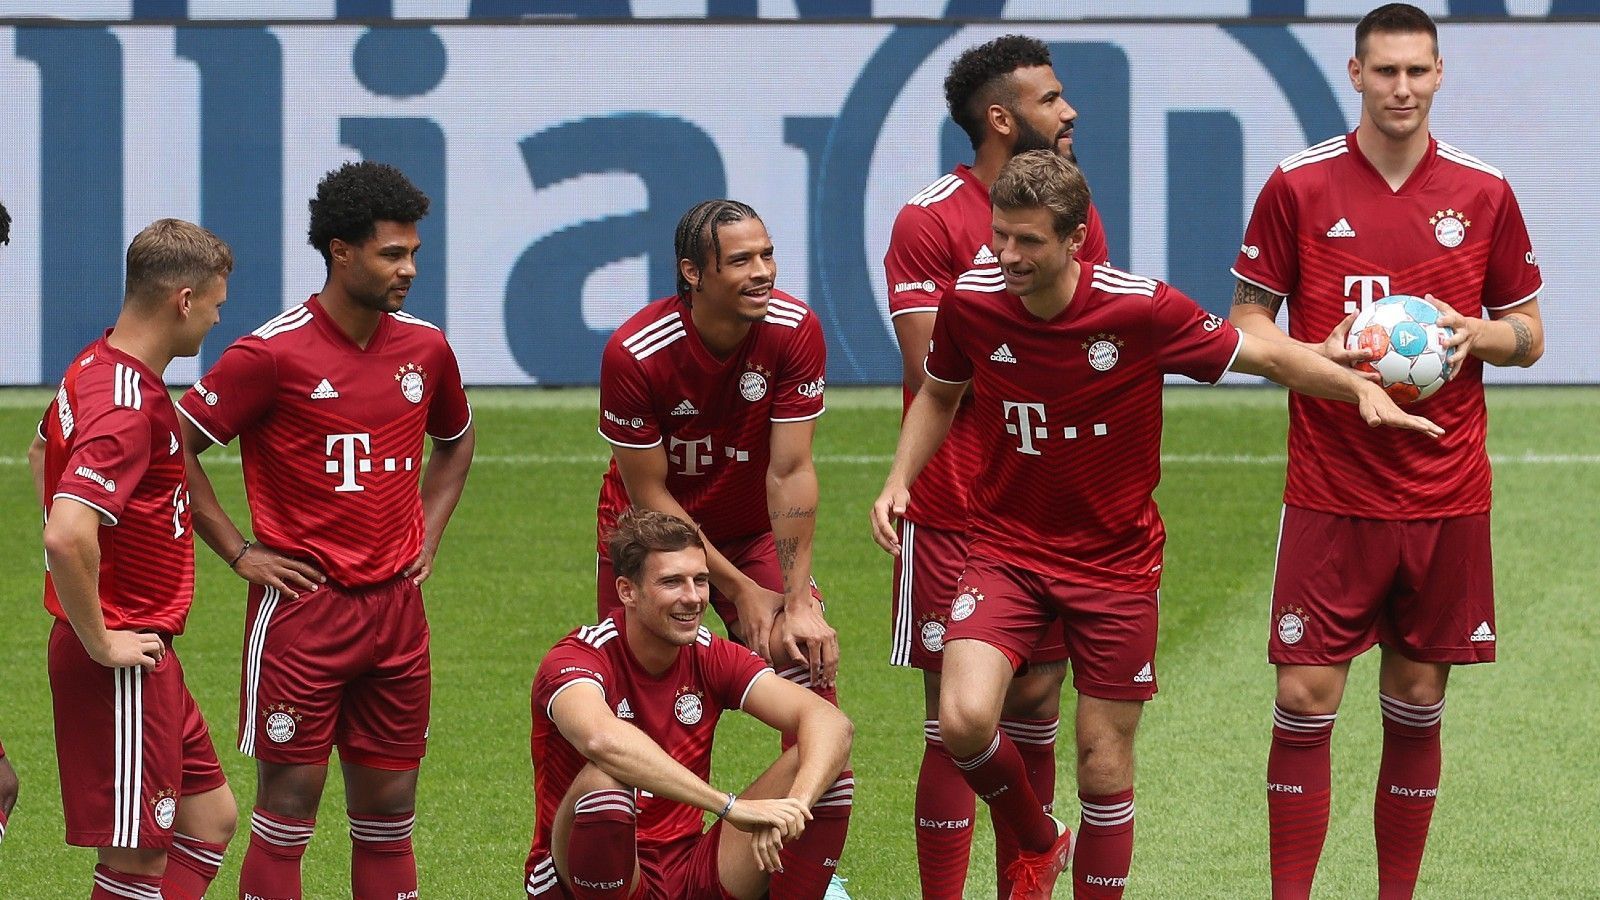 
                <strong>Platzt 2: FC Bayern München</strong><br>
                Der Sprung zu den beiden Spitzenreitern ist groß. Der Rekordmeister aus München muss sich zwar mit Rang zwei zufrieden geben, darf sich aber dennoch über 50 Prozent Zustimmung freuen. Jeder zweite der Befragten mag also den FC Bayern.
              